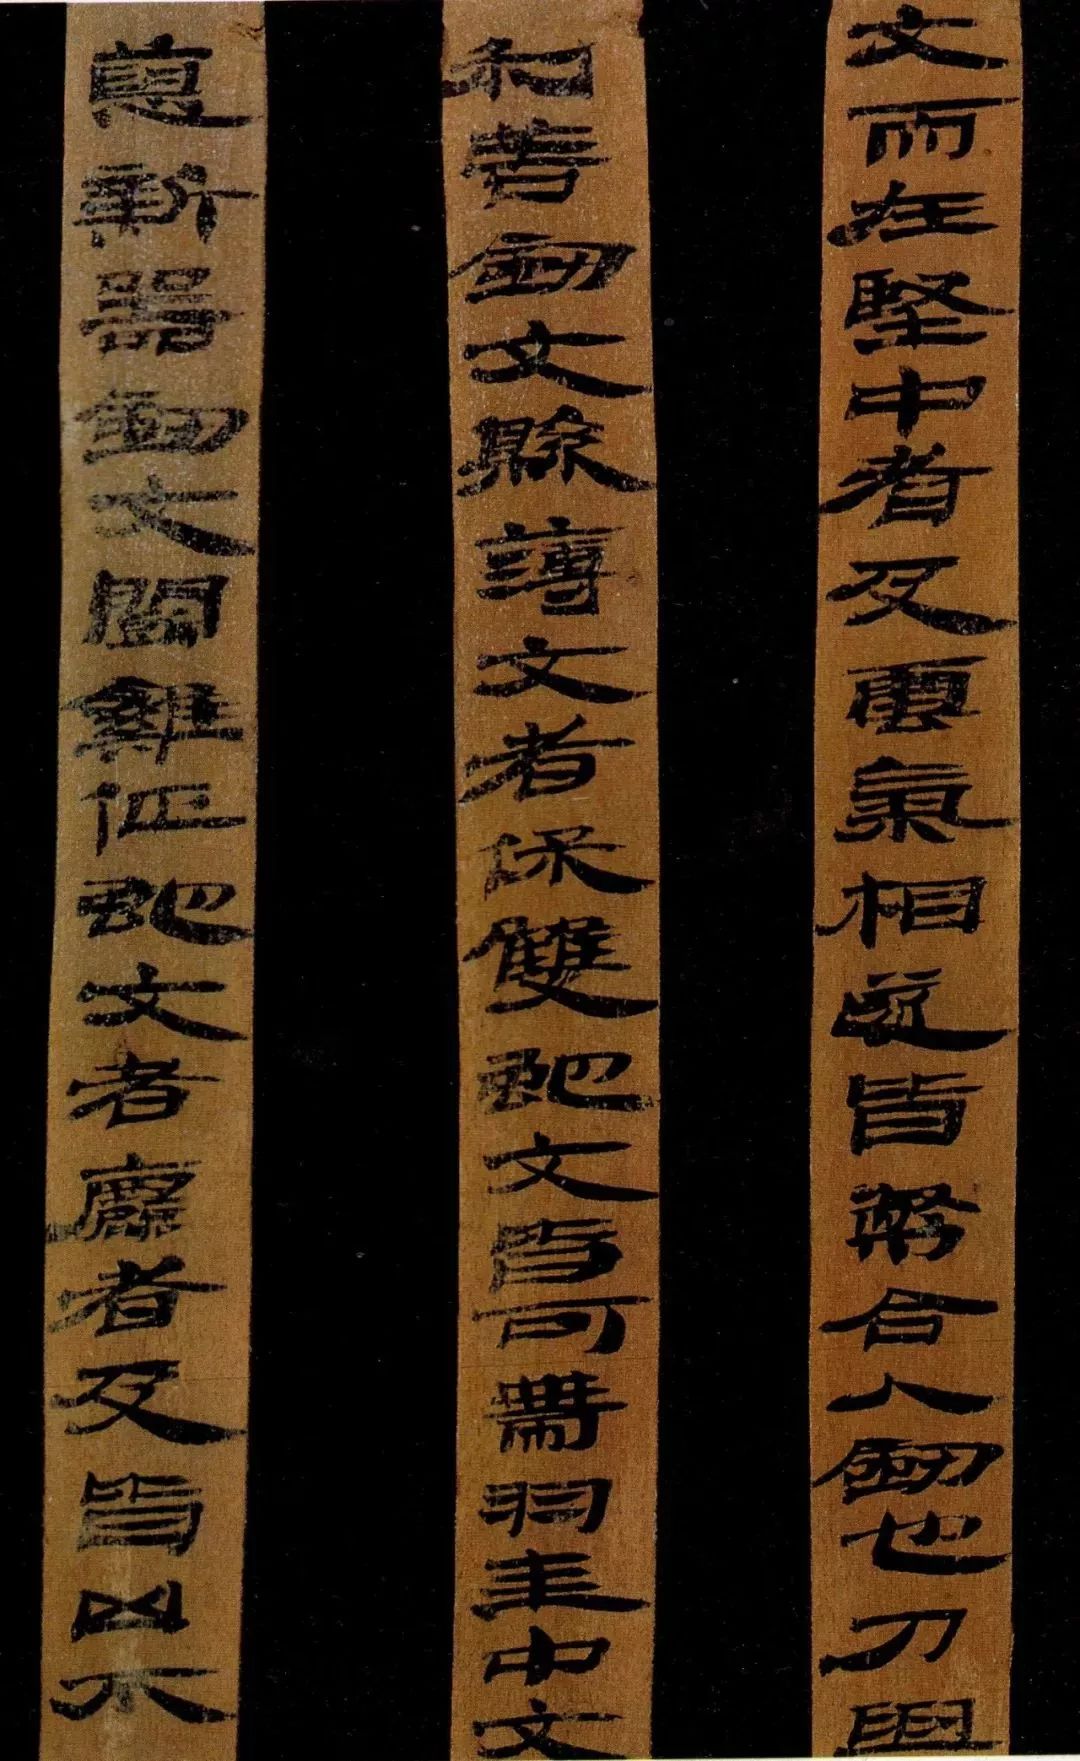 汉简书法,人类艺术史上的灵魂之作 